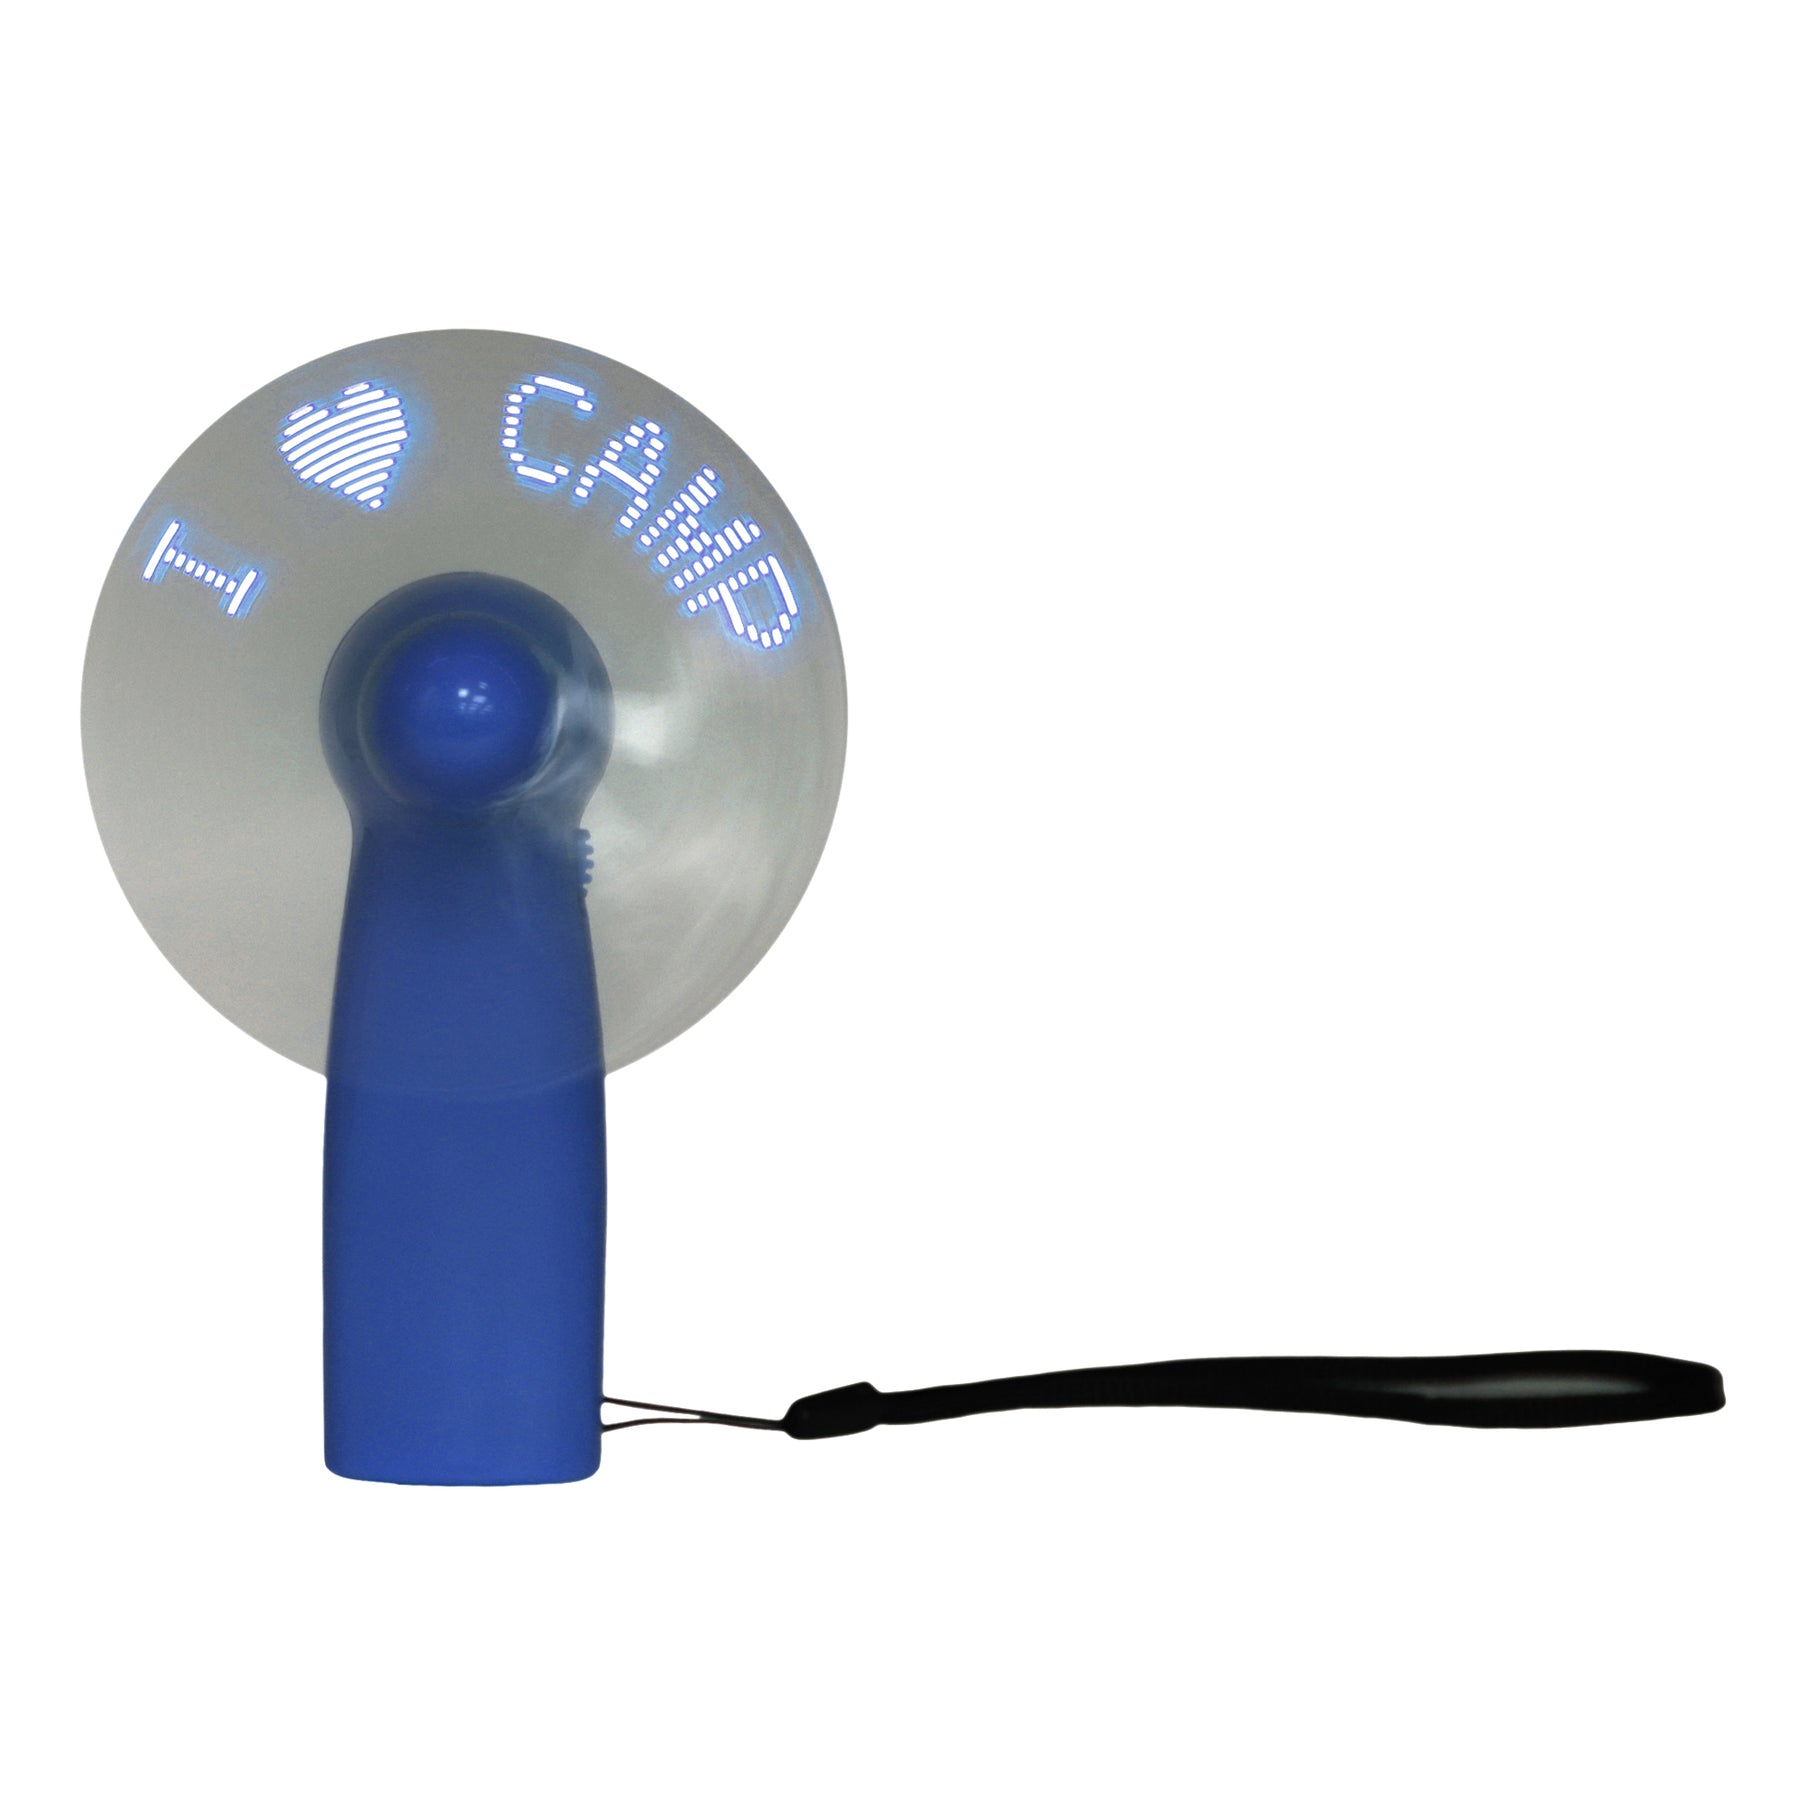 I Love Camp LED Fan